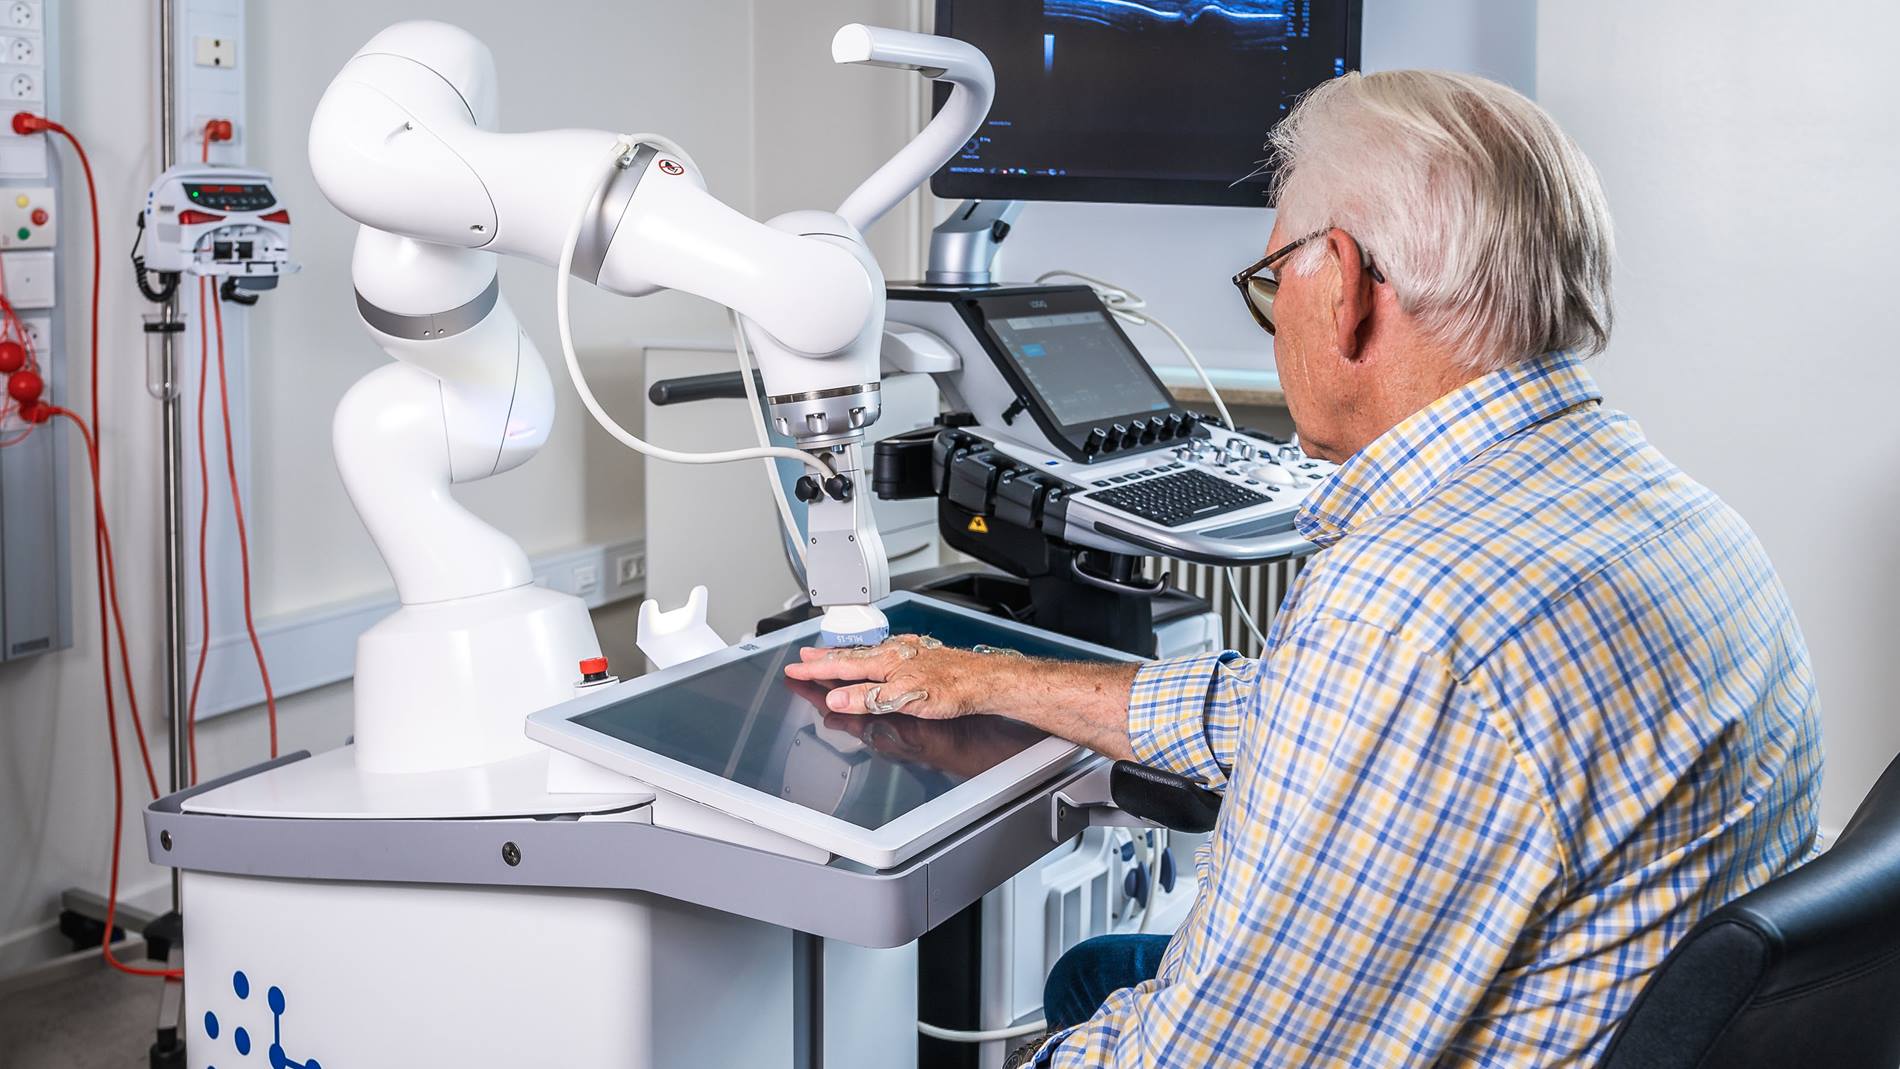 ROPCAs arthritis robot ARTHUR autonomously scans patients hands.